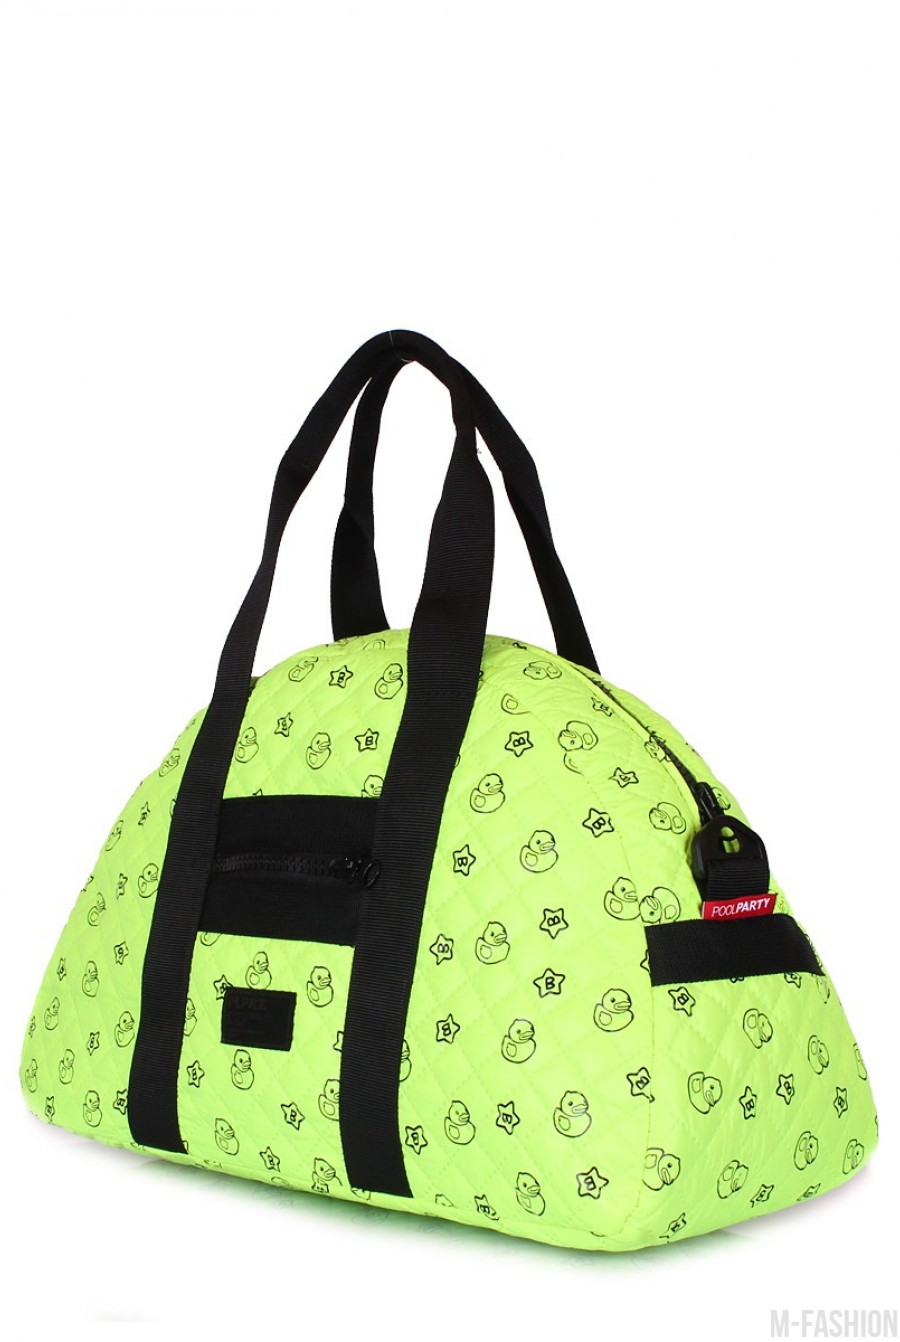 Стеганая дорожная сумка с ярко-зеленой расцветкой и позитивным принтом- Фото 2